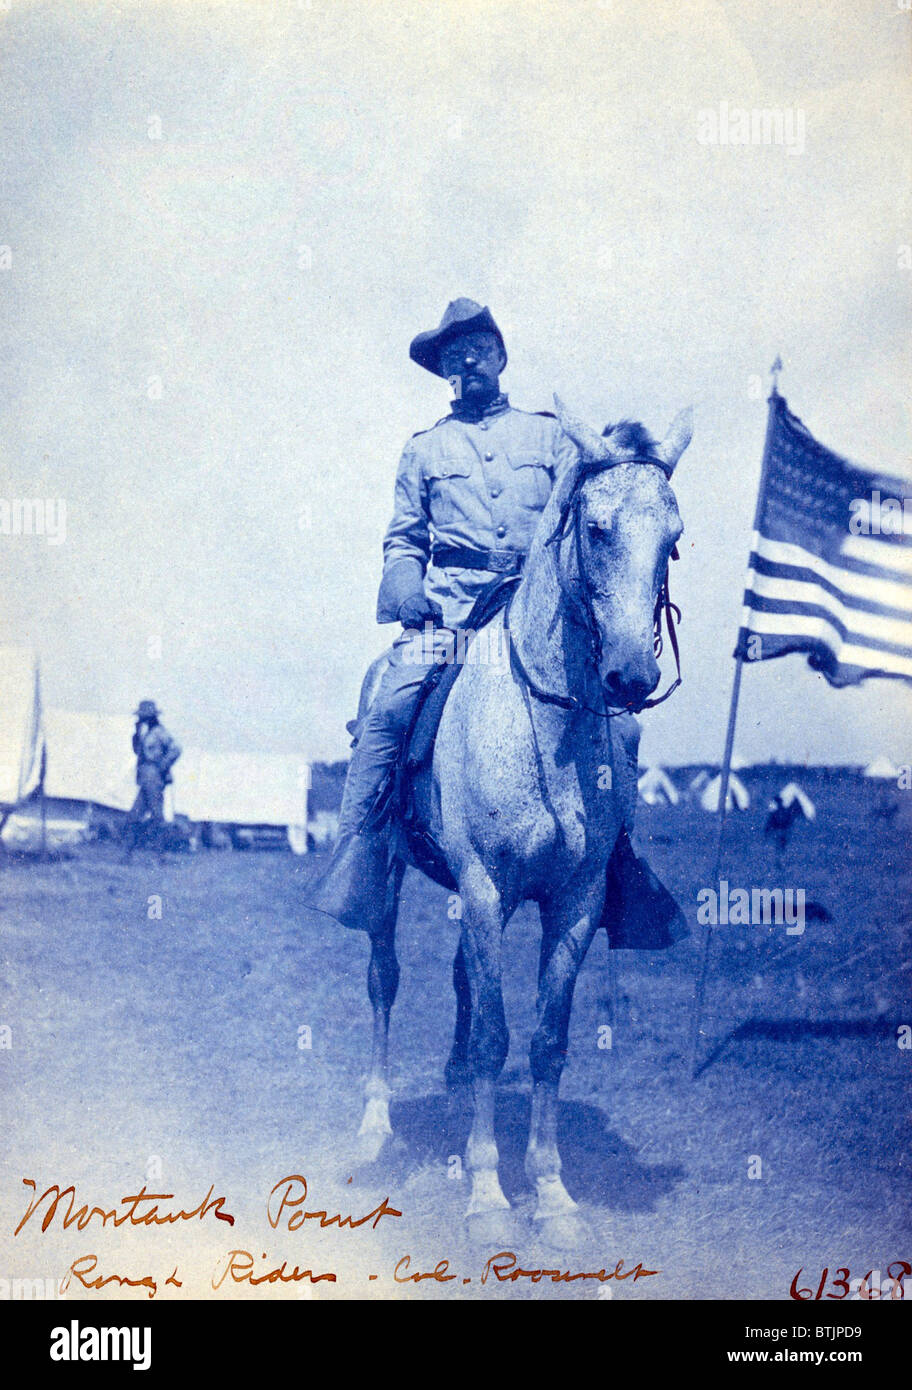 El Coronel Theodore Roosevelt a caballo. Roosevelt organizó la 1ª caballería de voluntarios, conocidos como los Rough Riders y se convirtió en un héroe nacional después de la guerra Hispano-Americana. Foto de stock